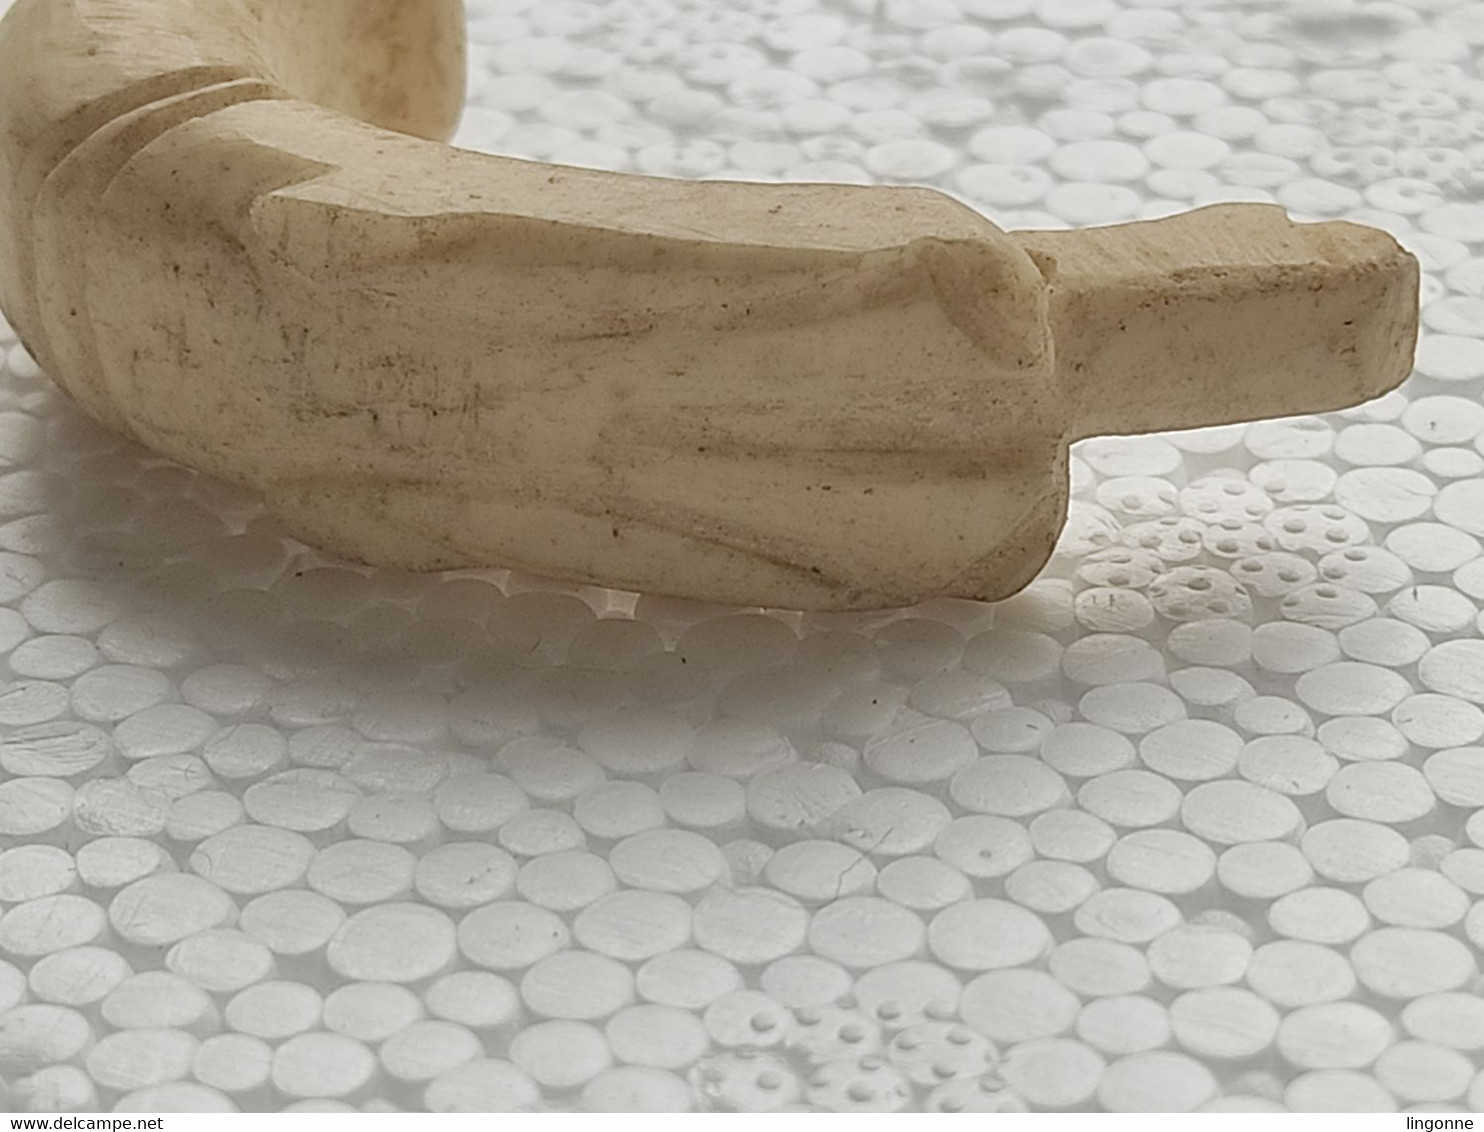 ANCIEN POMMEAU en OS TETE DE CHIEN Sculpté, DE CANNE OMBRELLE PARAPLUIE EPOQUE FIN 19ème SIECLE  Long 5 cm env